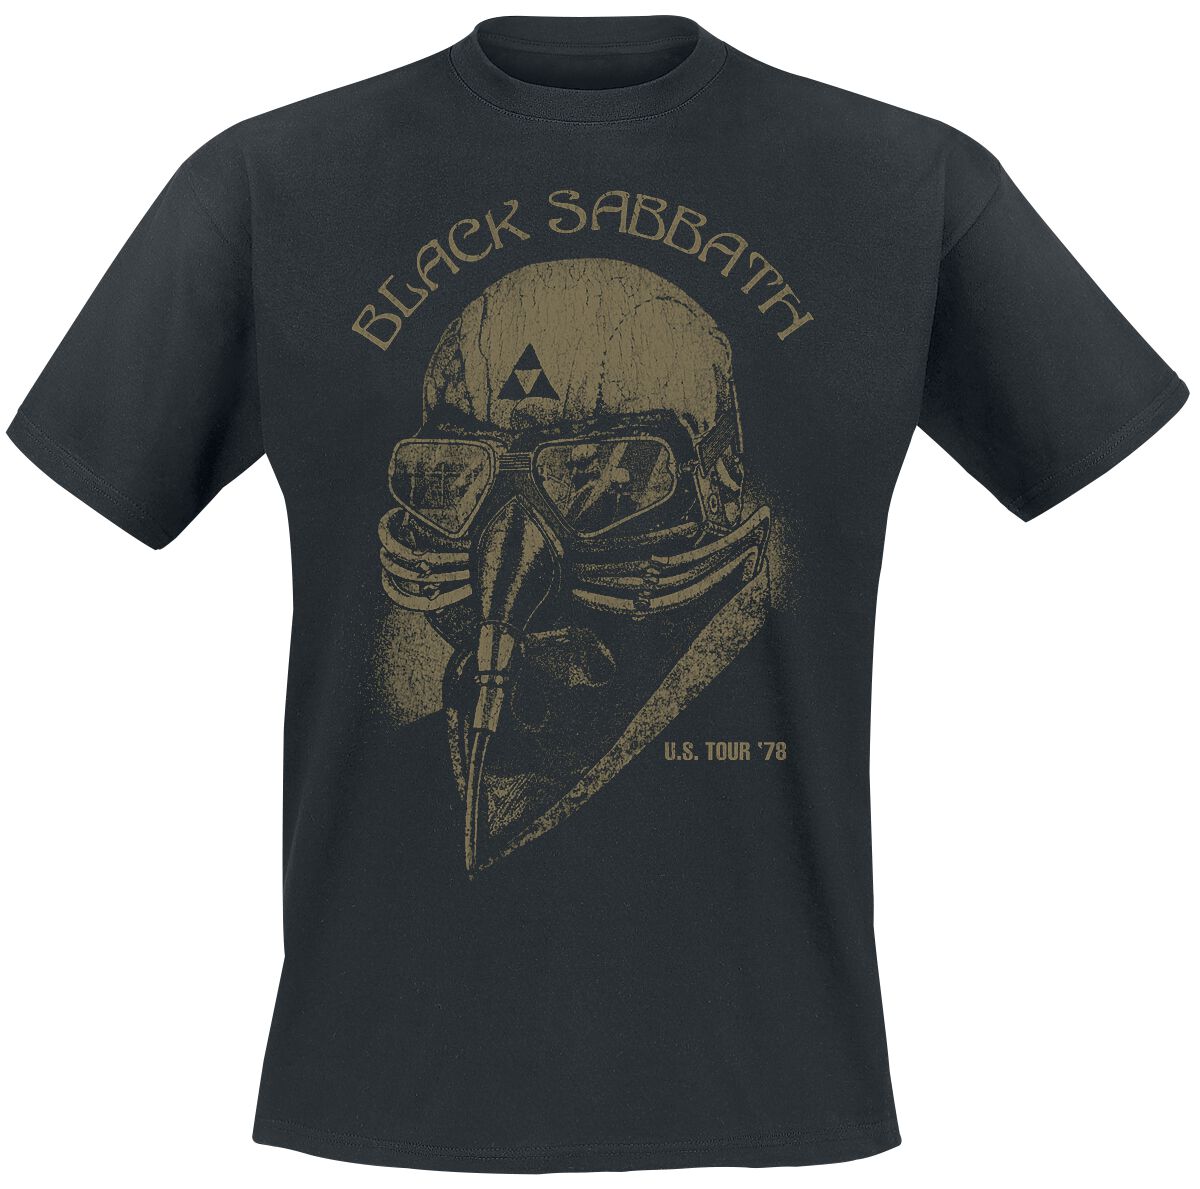 black sabbath t-shirt - u.s. tour 78 - s bis 5xl - fÃ¼r mÃ¤nner - grÃ¶ÃŸe s - - lizenziertes merchandise! schwarz